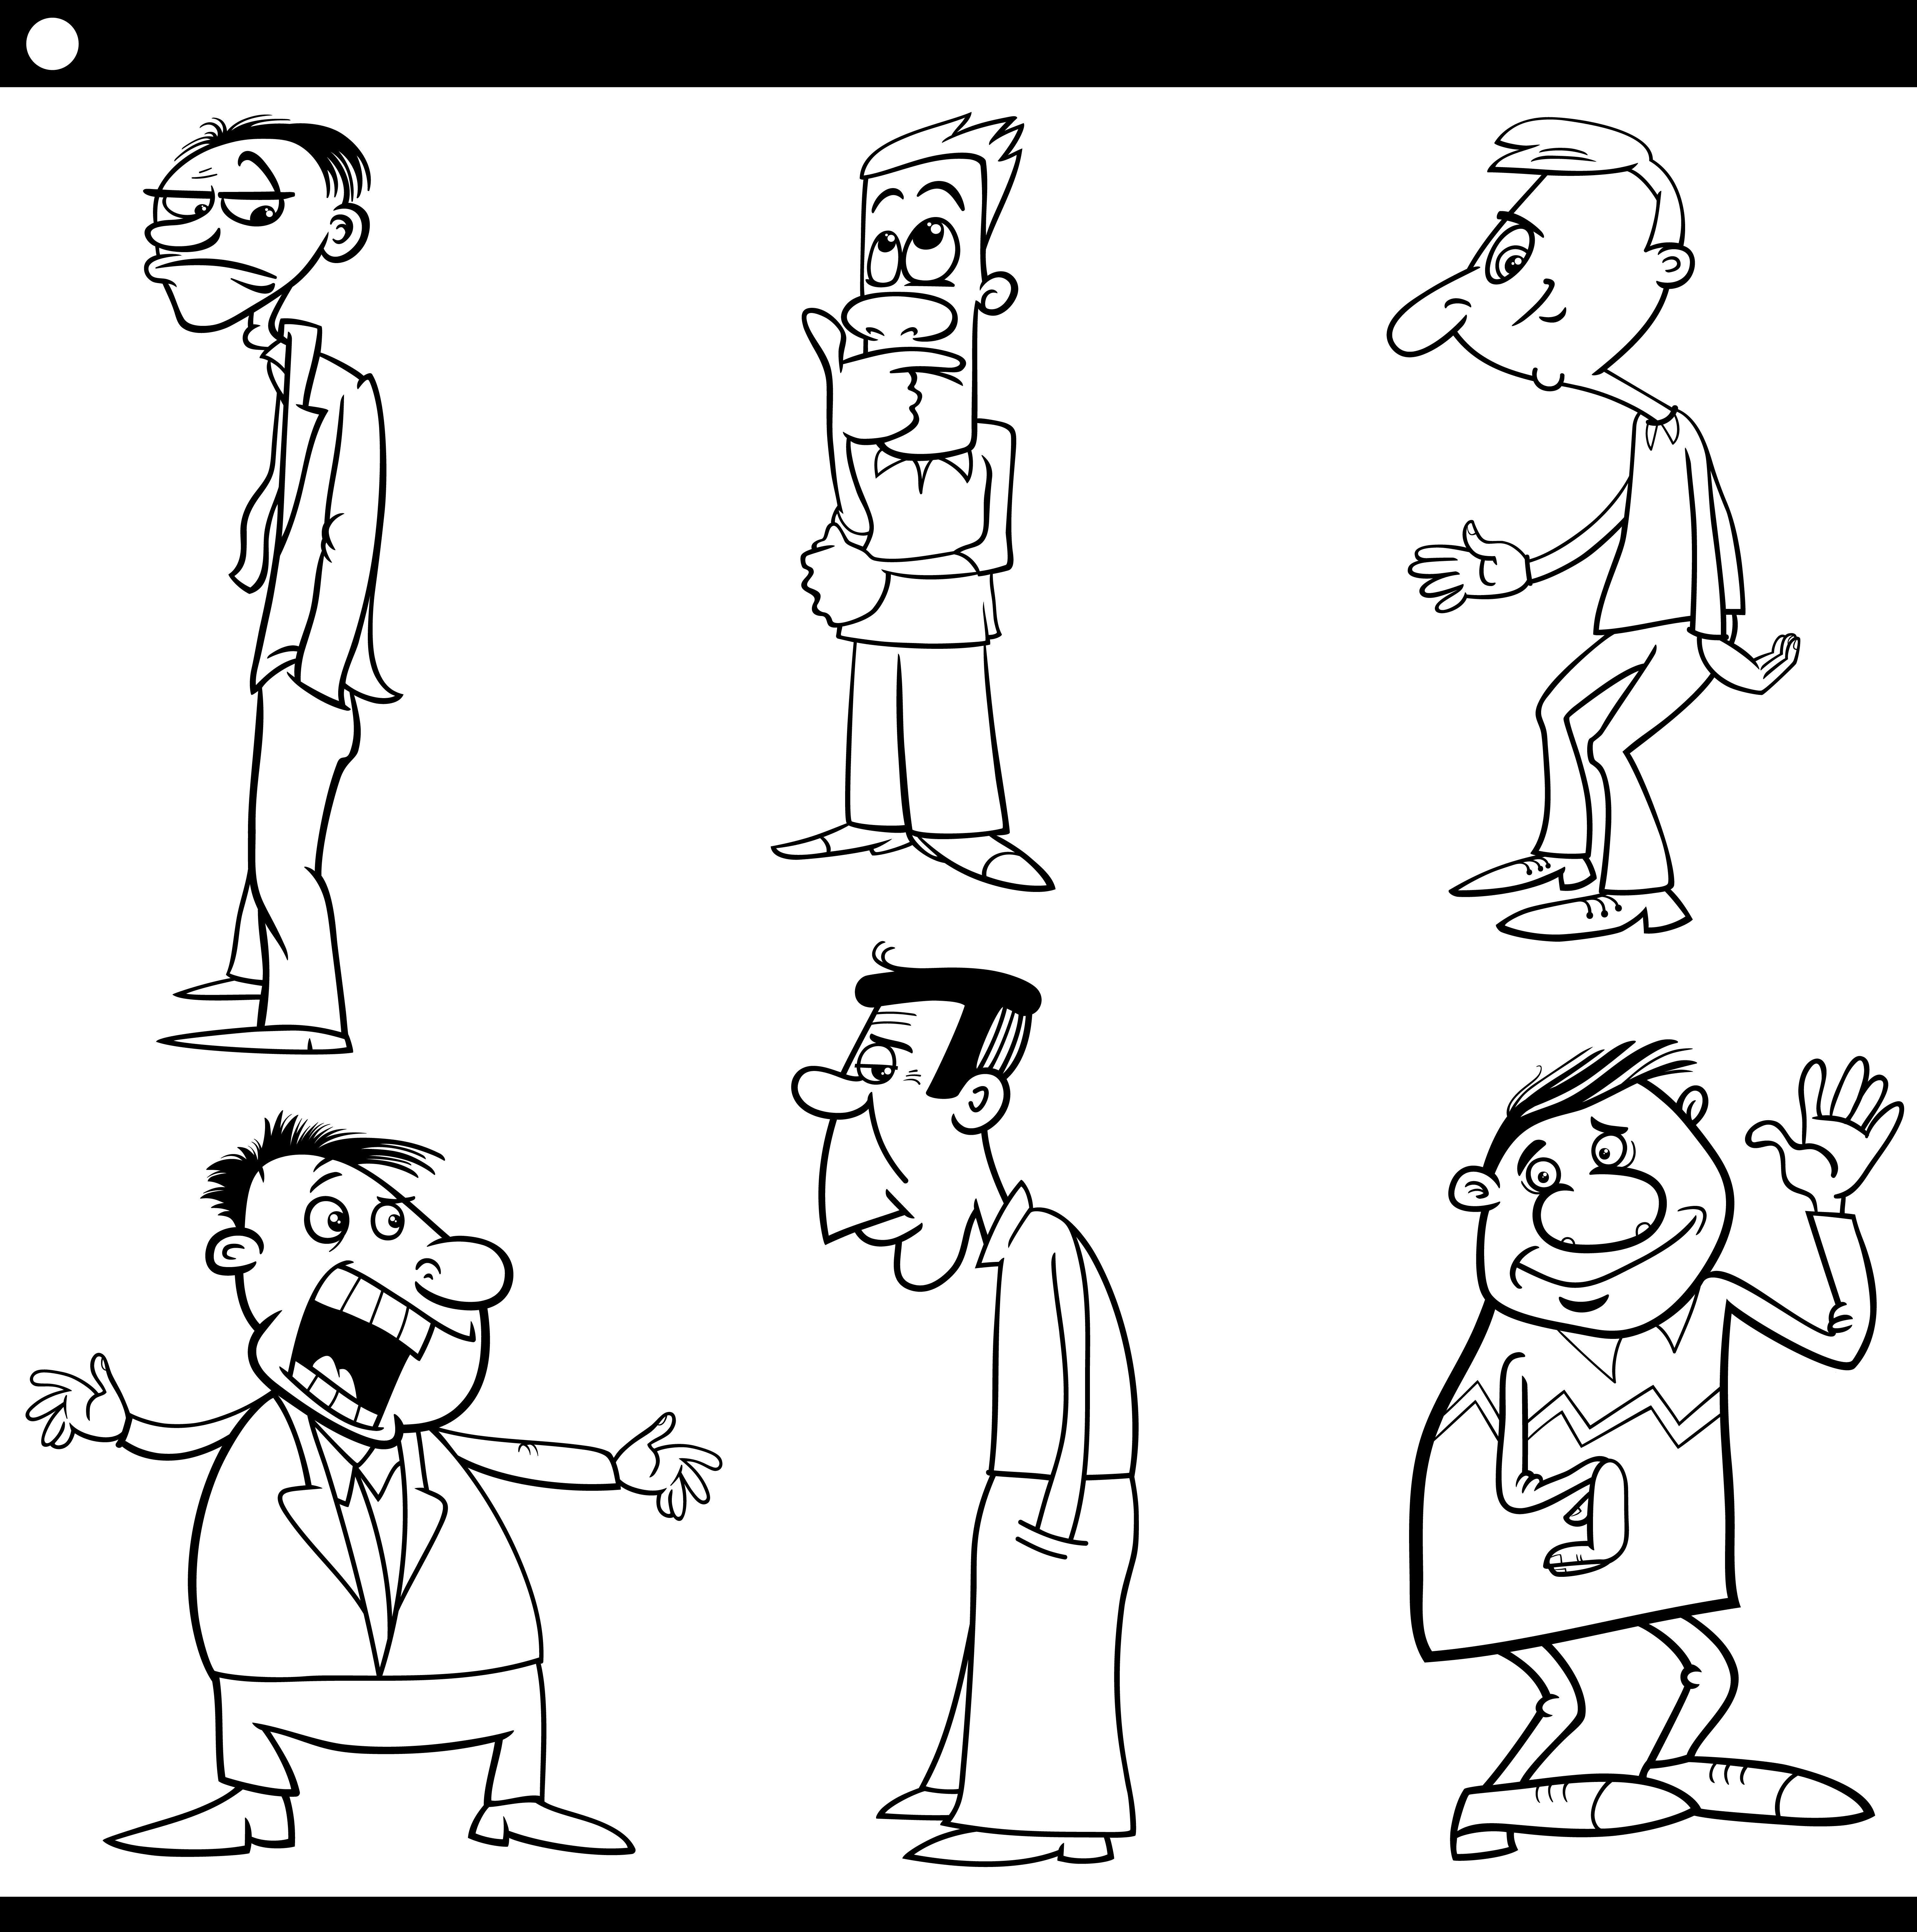 Arte de linha preto e branco de um personagem de desenho animado